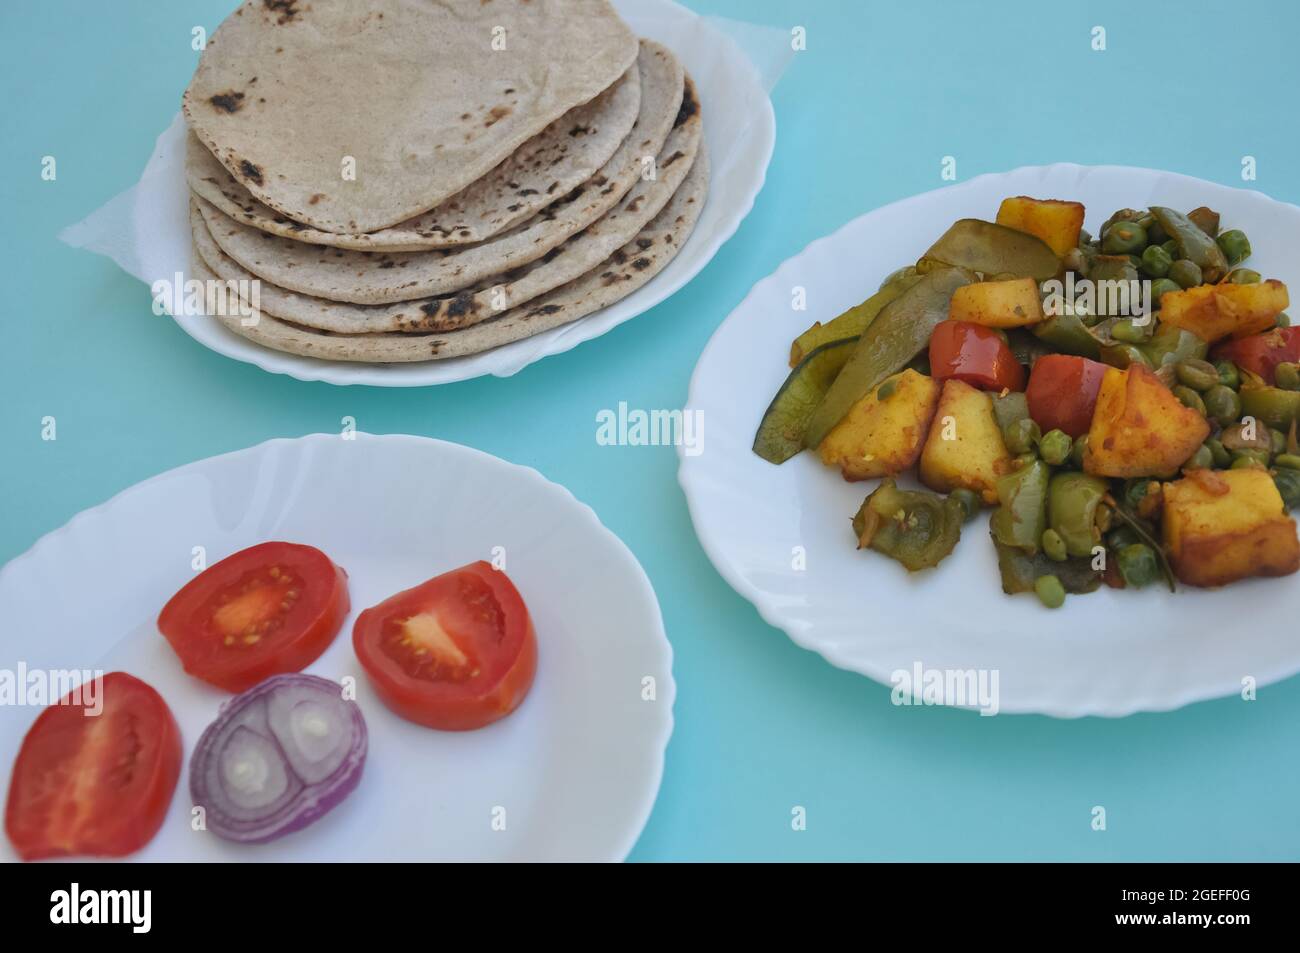 Indian Food - Matar Paneer Gemüse, Roti und Salat auf weißem Teller mit hellblauem Hintergrund Stockfoto